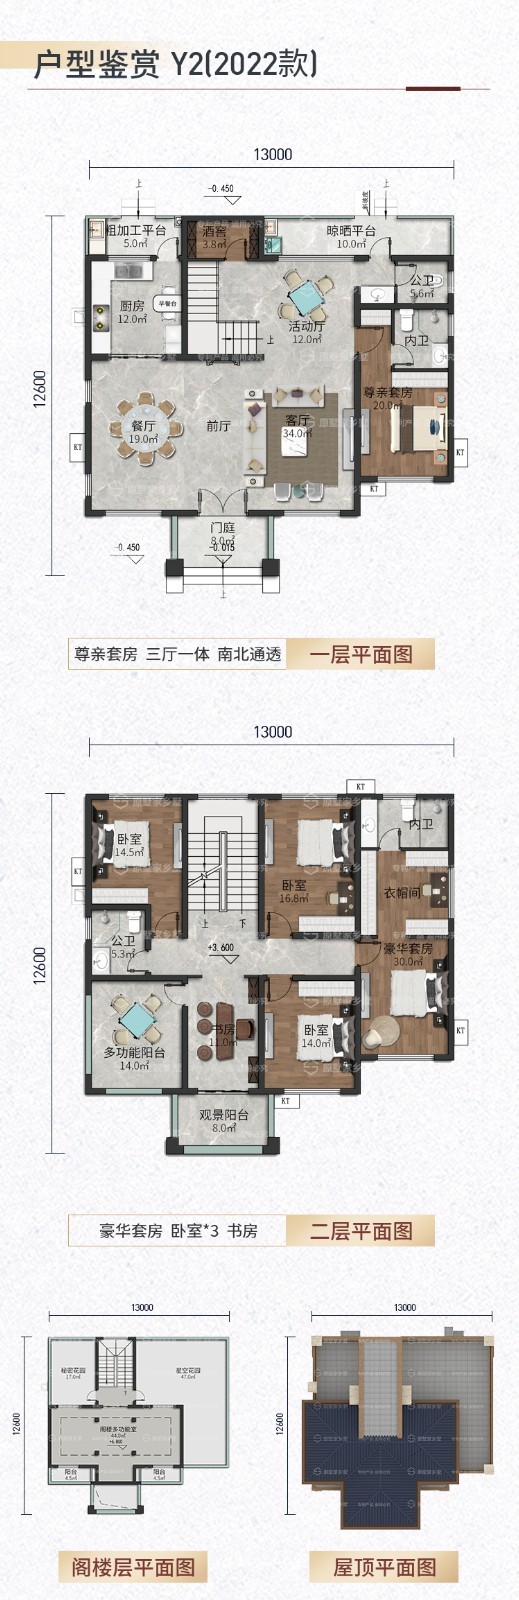 Y2二层新亚洲风格2022款农村自建别墅